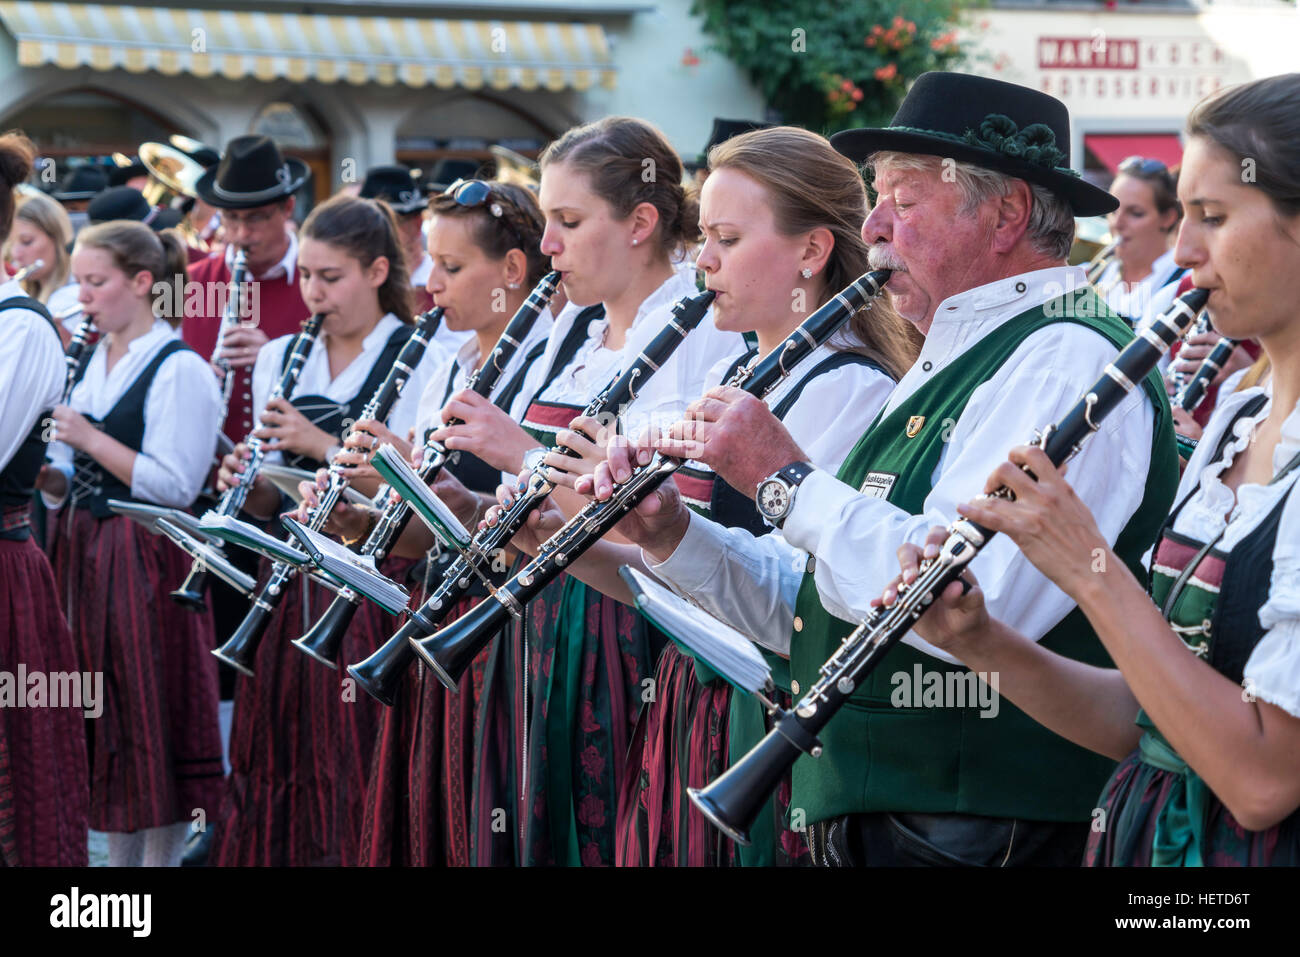 Sfilata con la banda musicale in costumi tradizionali, Lindau, Lago di Costanza, Baviera, Germania, Europa Foto Stock